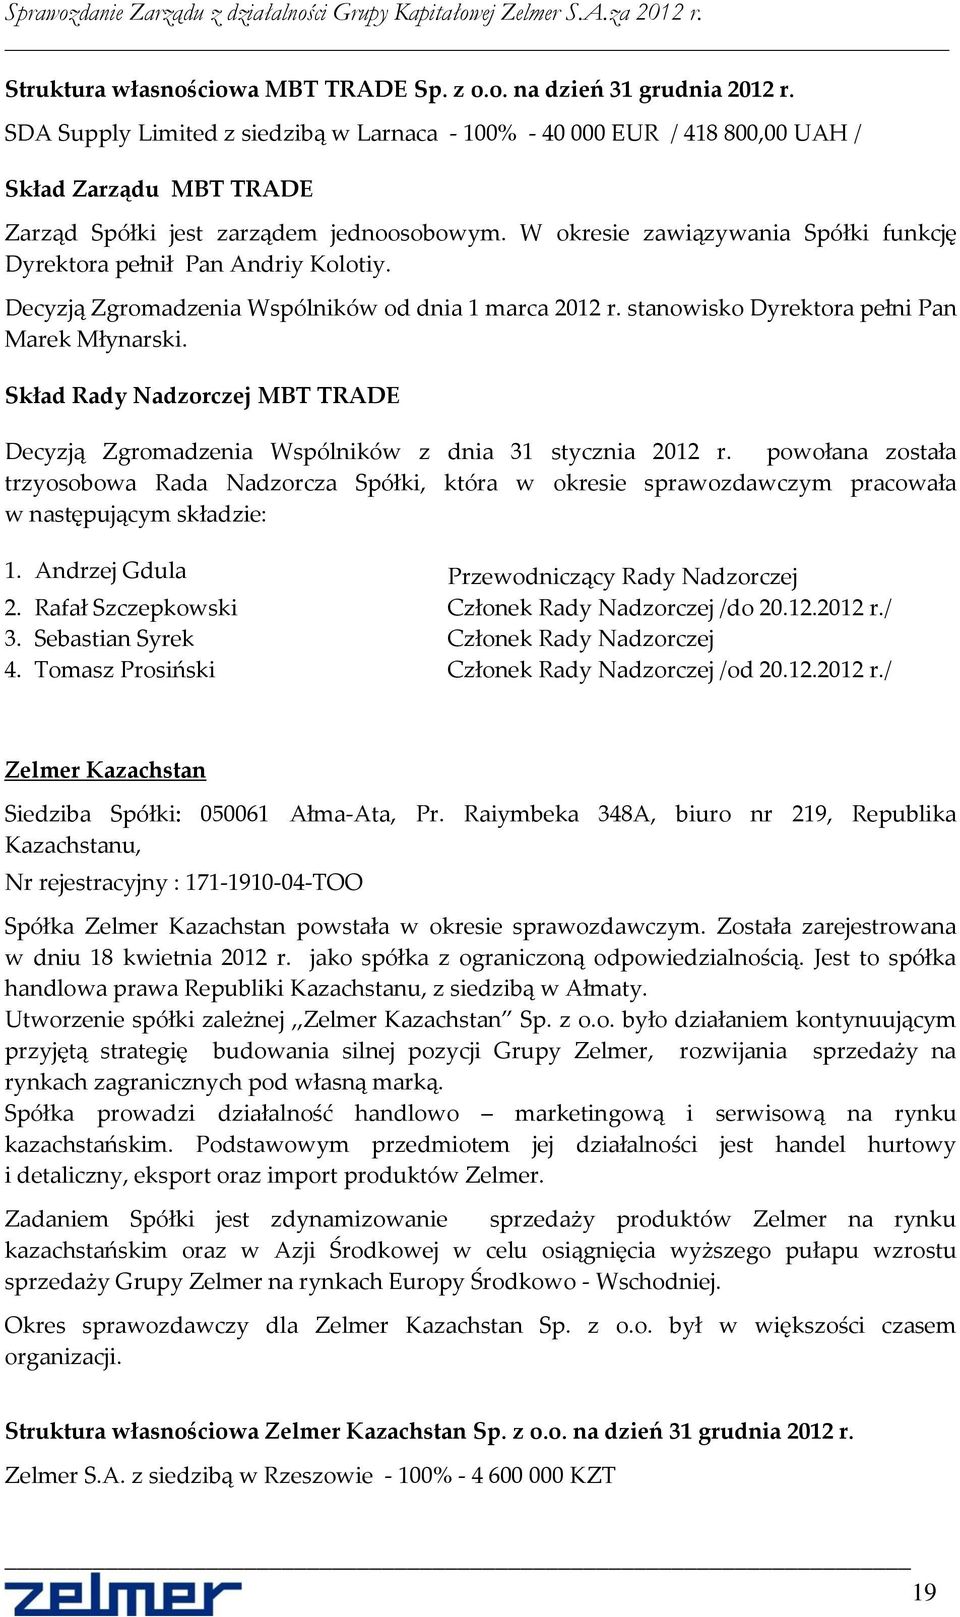 W okresie zawiązywania Spółki funkcję Dyrektora pełnił Pan Andriy Kolotiy. Decyzją Zgromadzenia Wspólników od dnia 1 marca 2012 r. stanowisko Dyrektora pełni Pan Marek Młynarski.